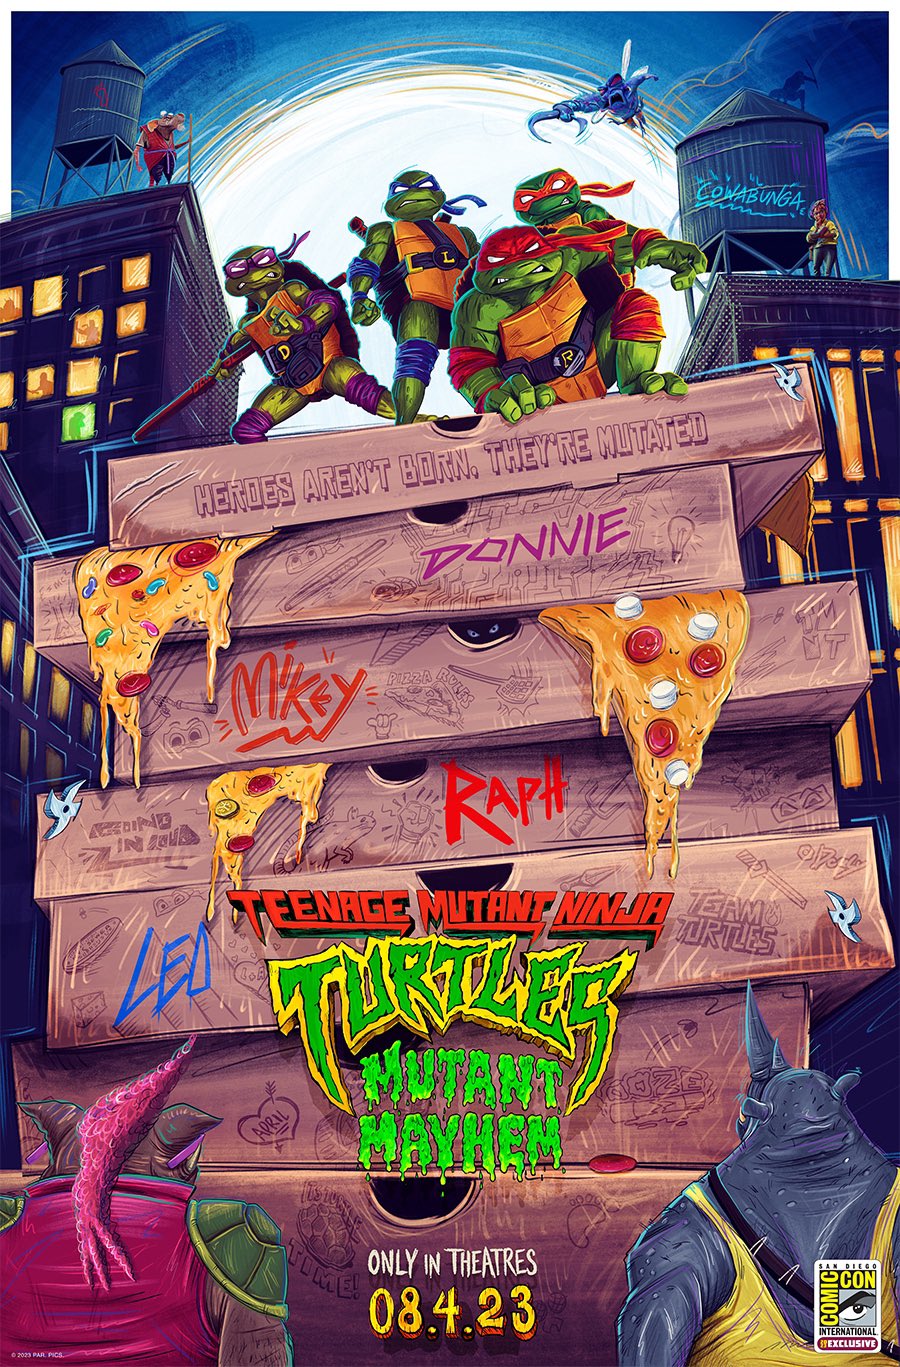 Artwork by Teenage Mutant Ninja Turtles: Mutant Mayhem